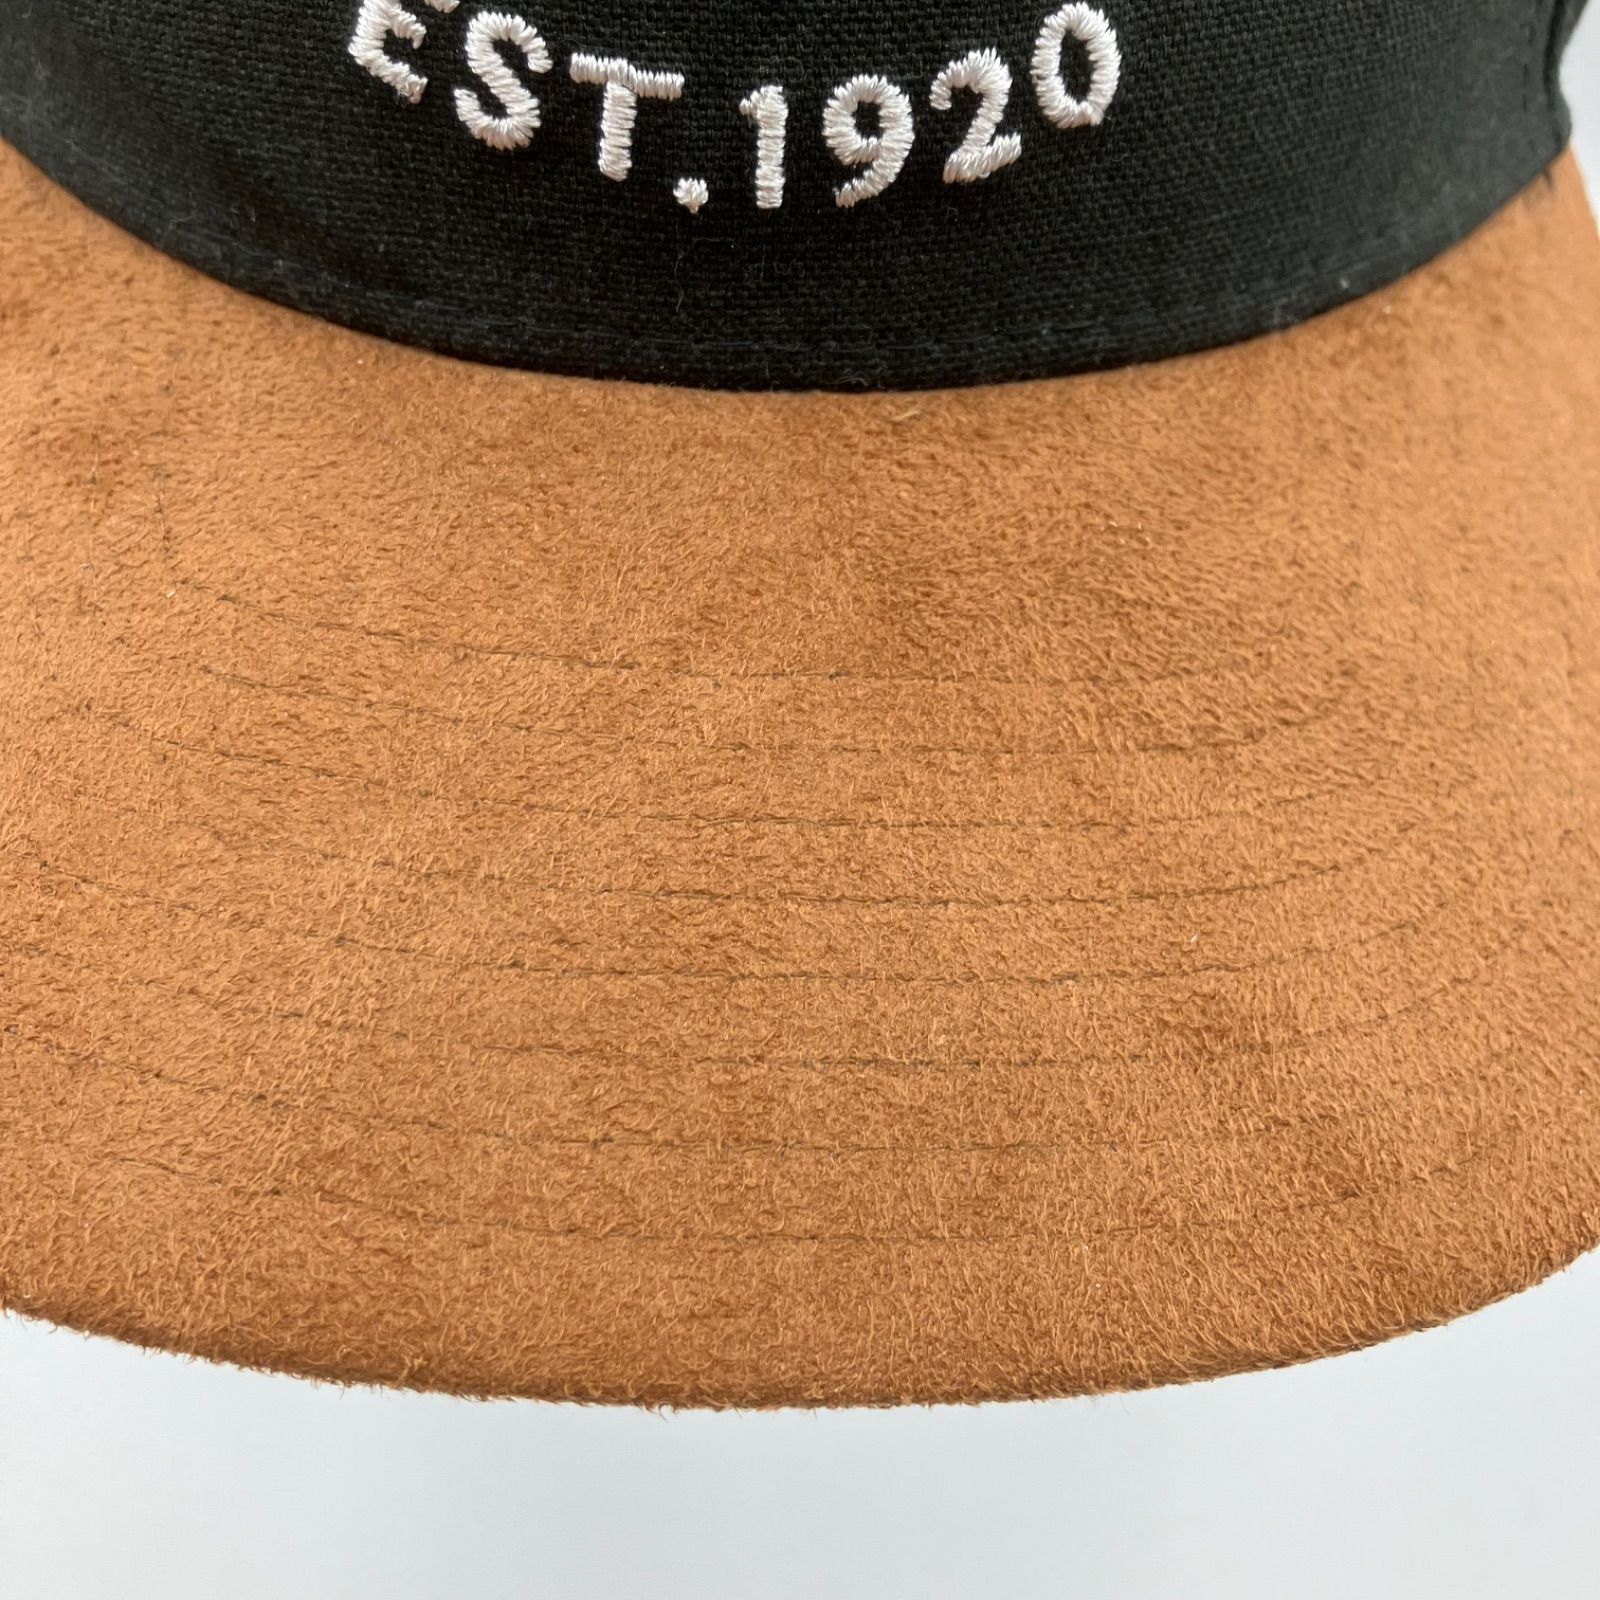 NEW ERA ニューエラ ロゴ キャップ 帽子 バイカラー ブラック ブラウン 黒 スナップバック メンズ SG149-27